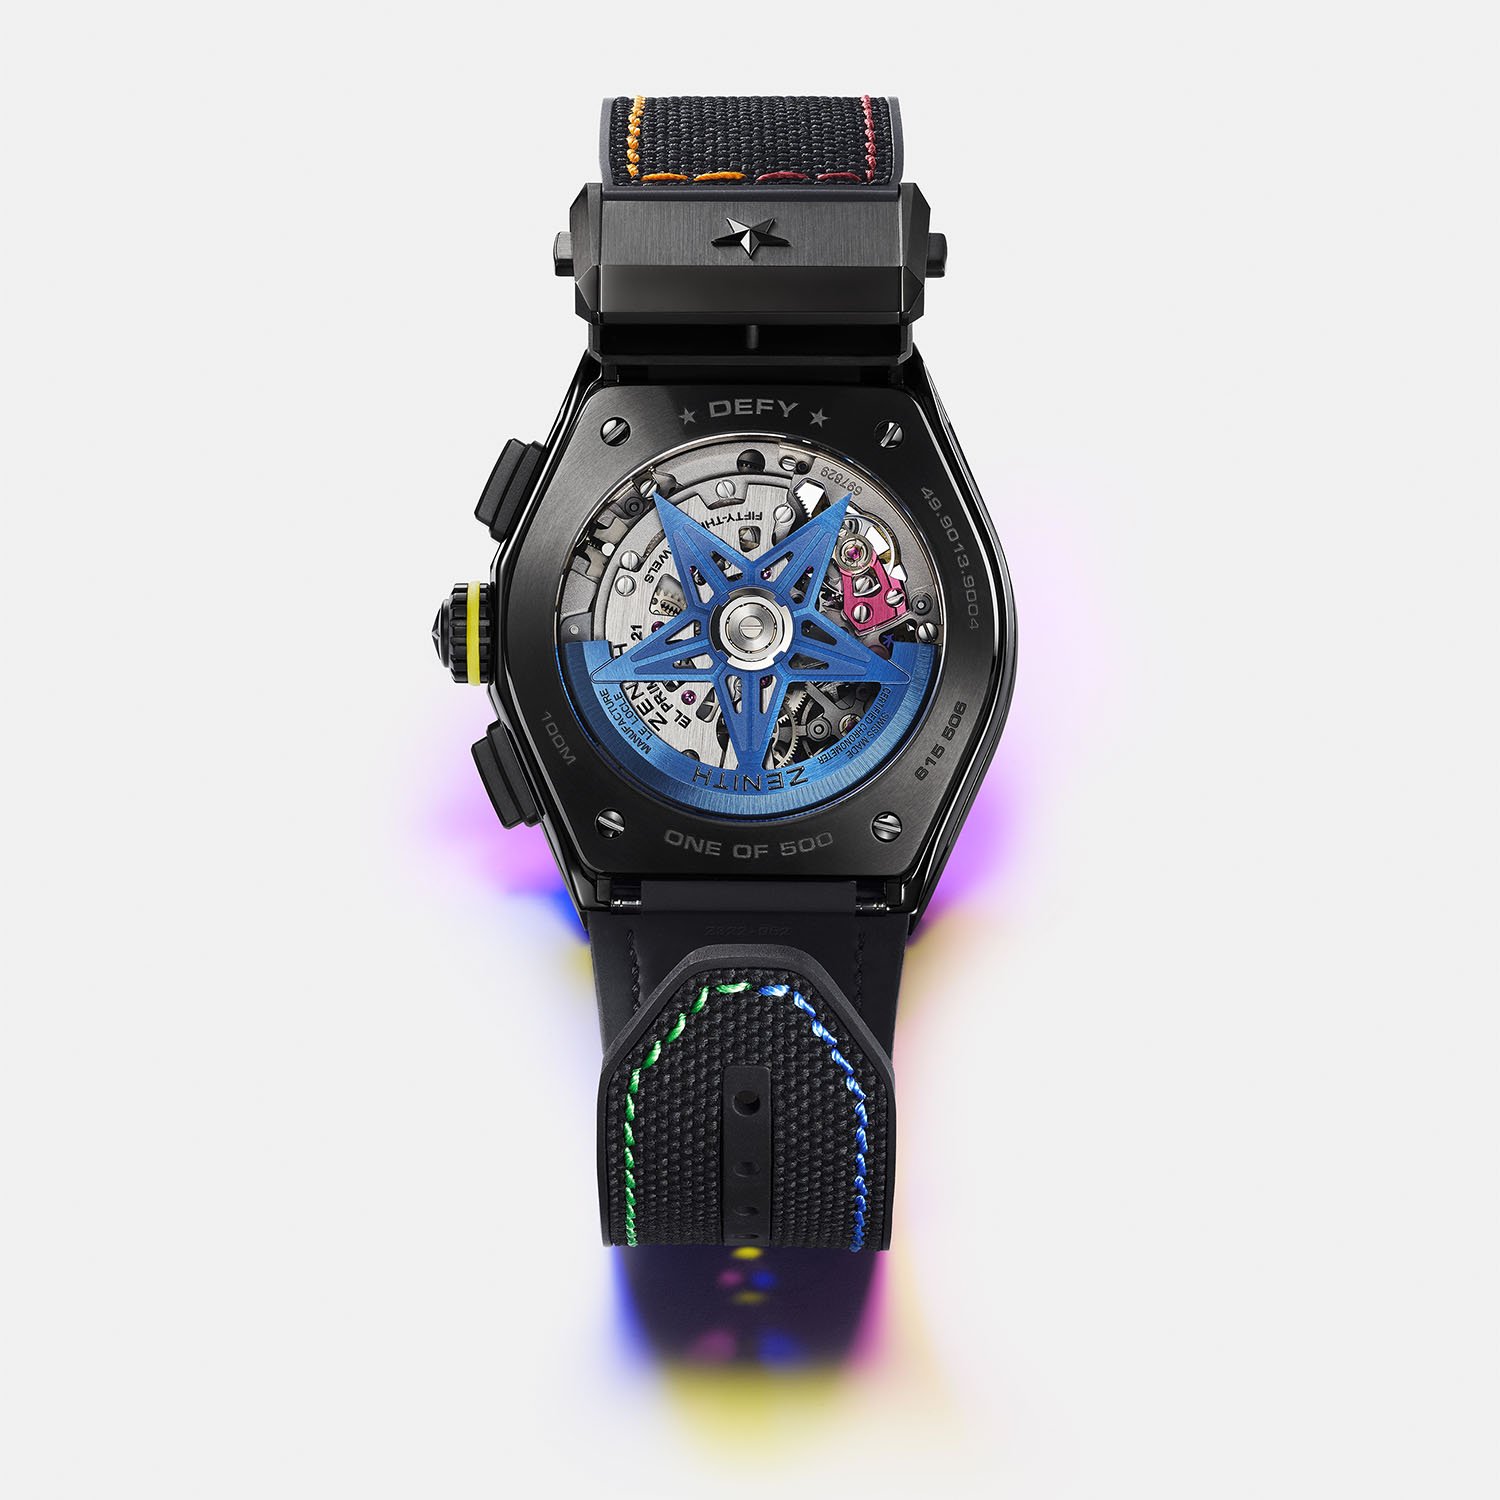 Представлена модель часов Zenith Defy Chroma II с радужной тематикой, выполненная из черной или белой керамики